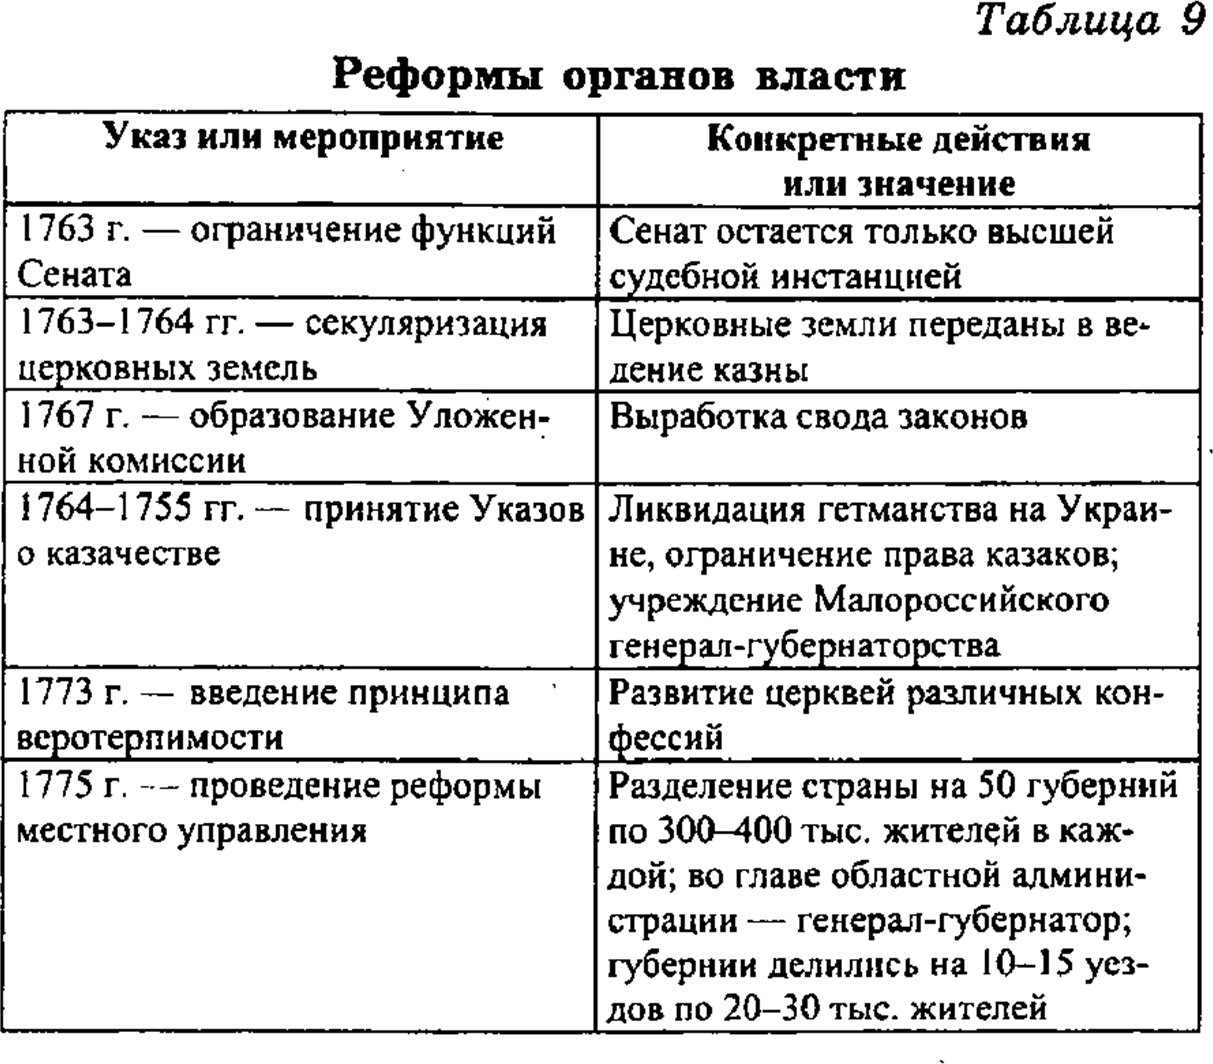 Экономика при екатерине 2 таблица. Реформы Екатерины 2 таблица. 801-1811 Гг. реформы таблица.